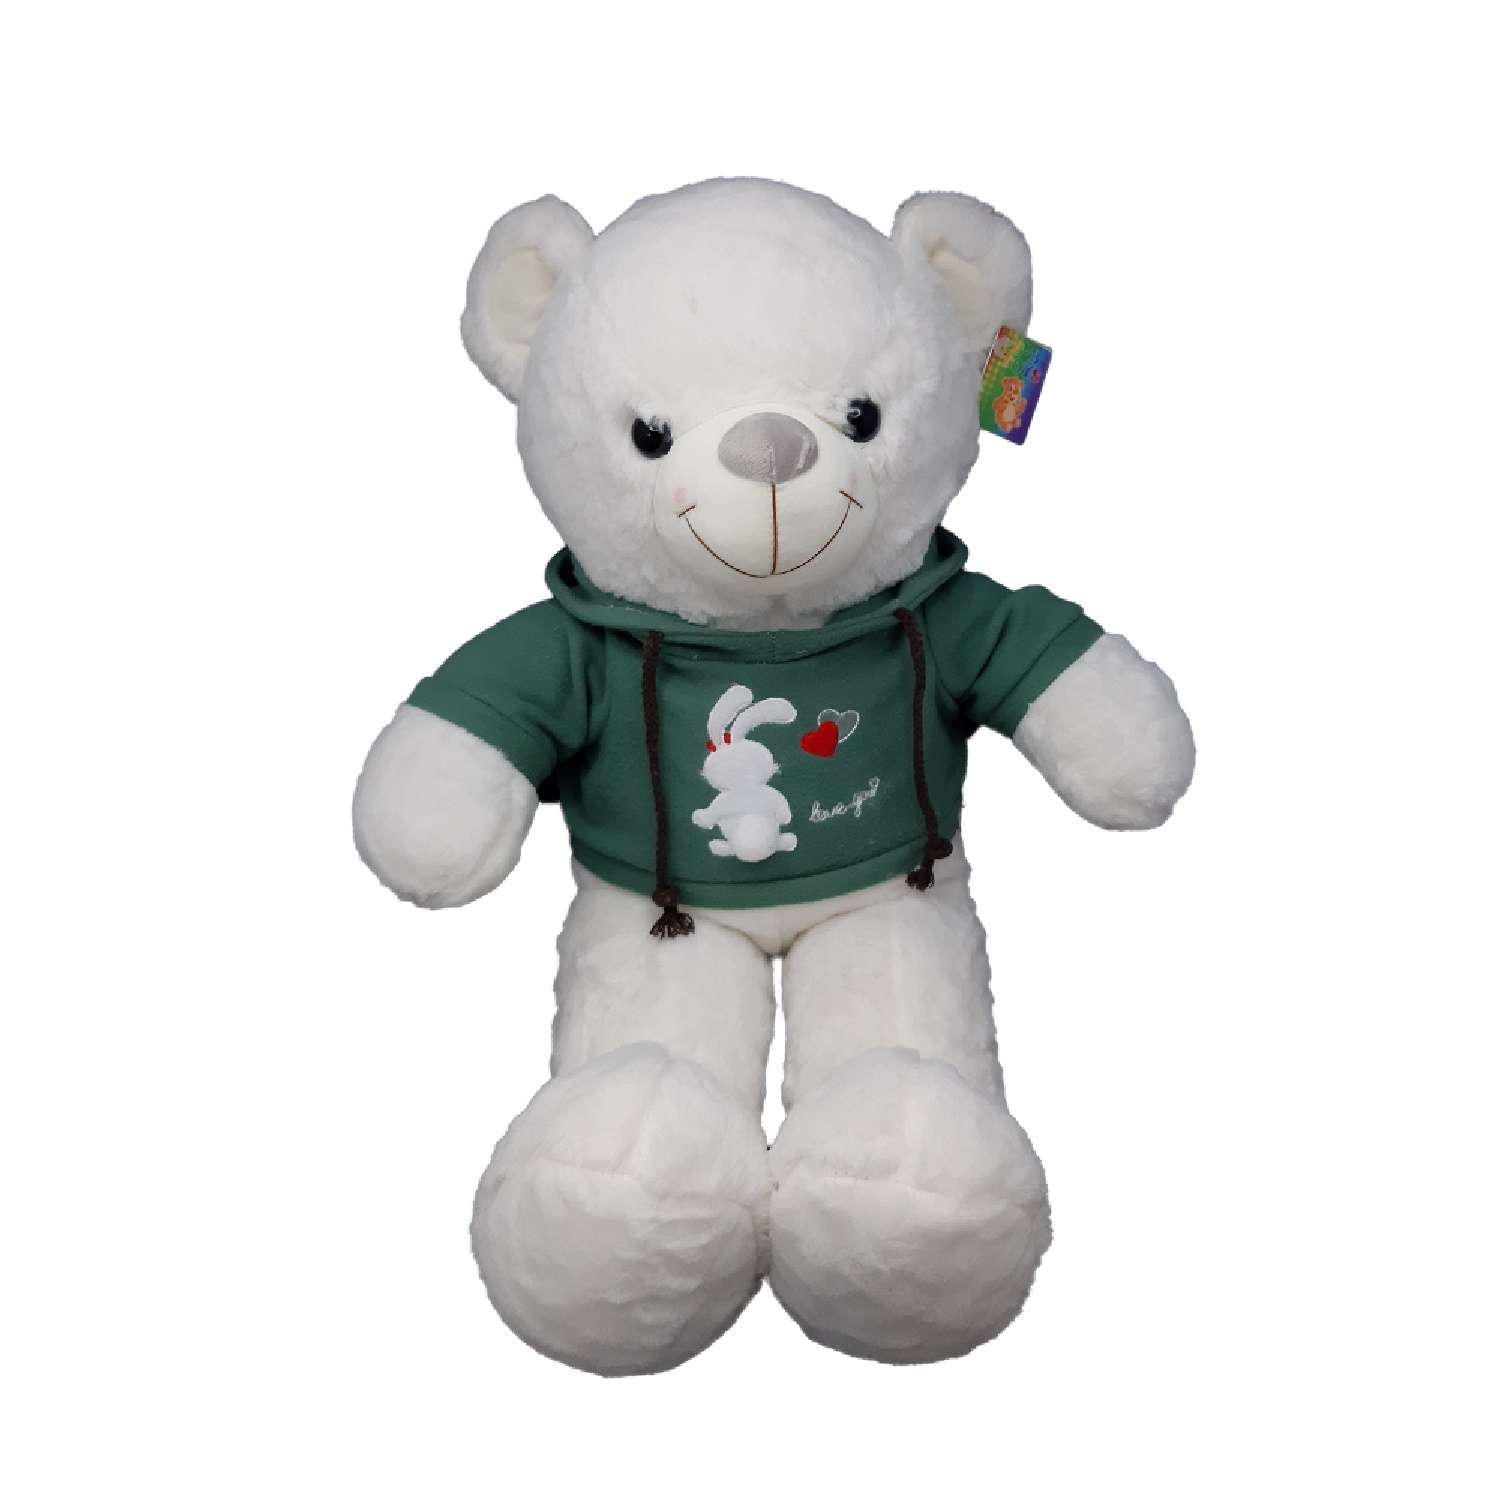 Мягкая игрушка Avocadoffka Белый медведь в зеленой кофте с капюшоном 60см - фото 1